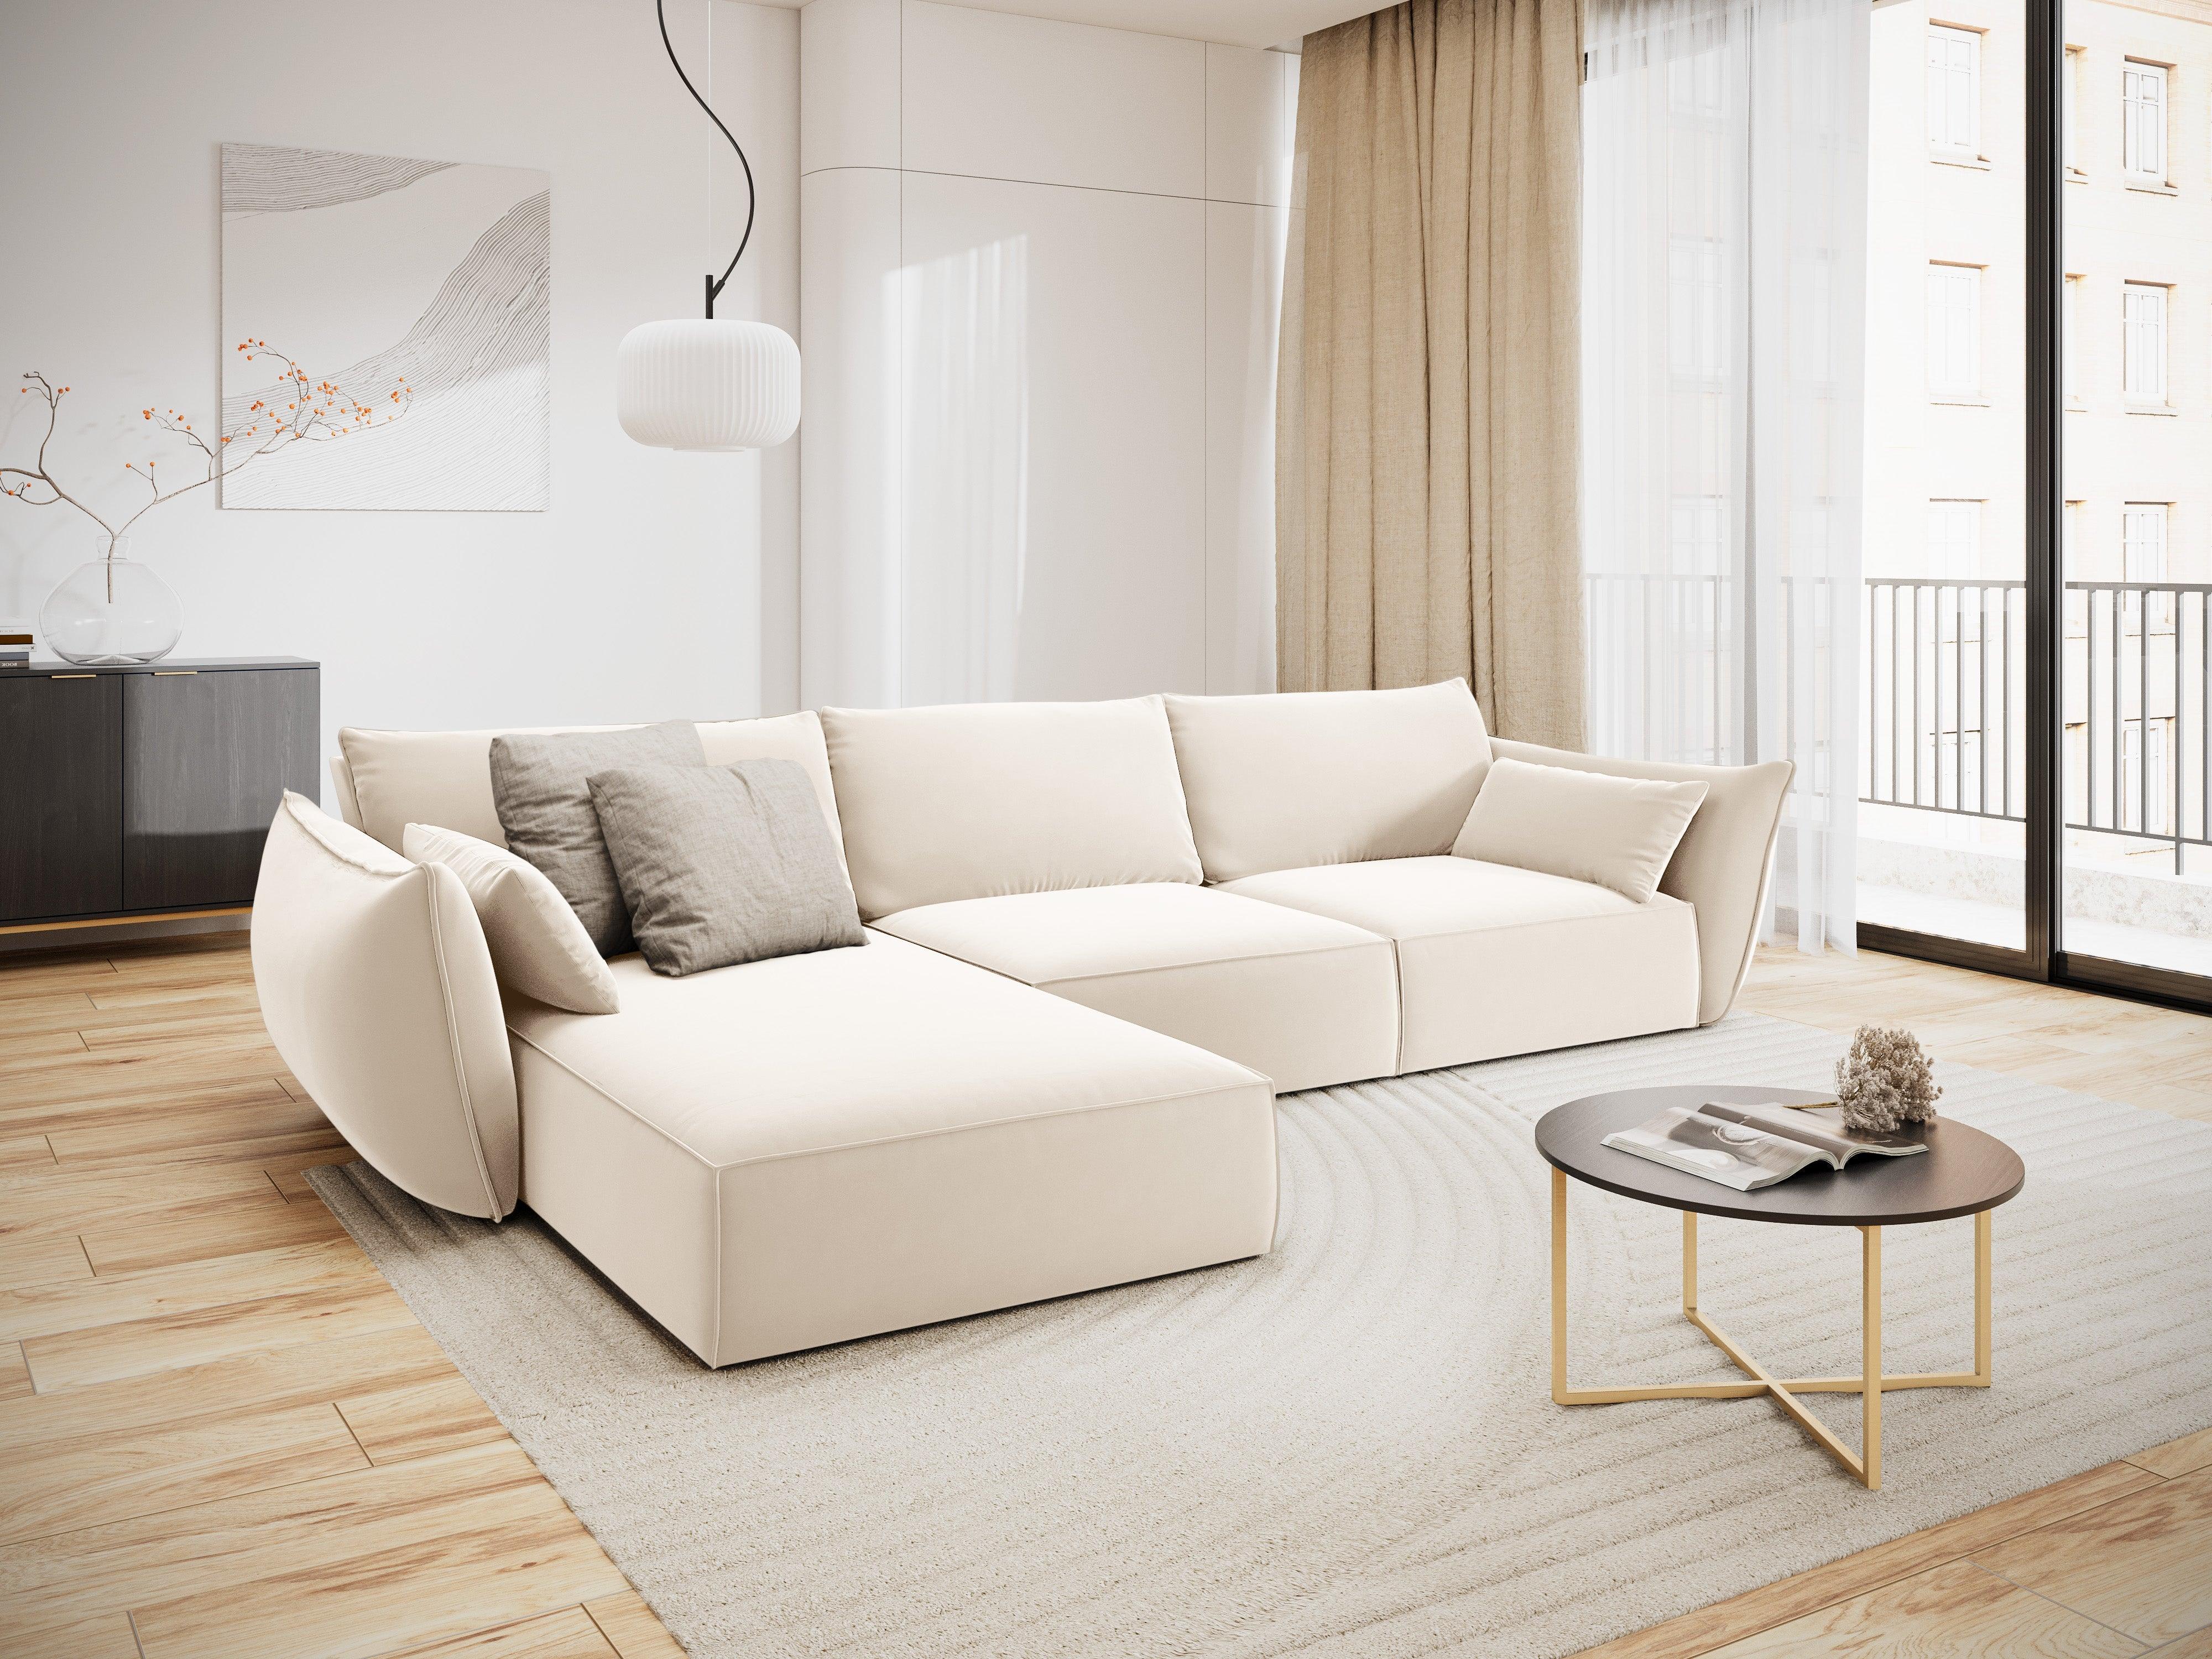 Velvet Left Corner Sofa, "Vanda", 4 Seats, 300x166x85
Made in Europe, Mazzini Sofas, Eye on Design